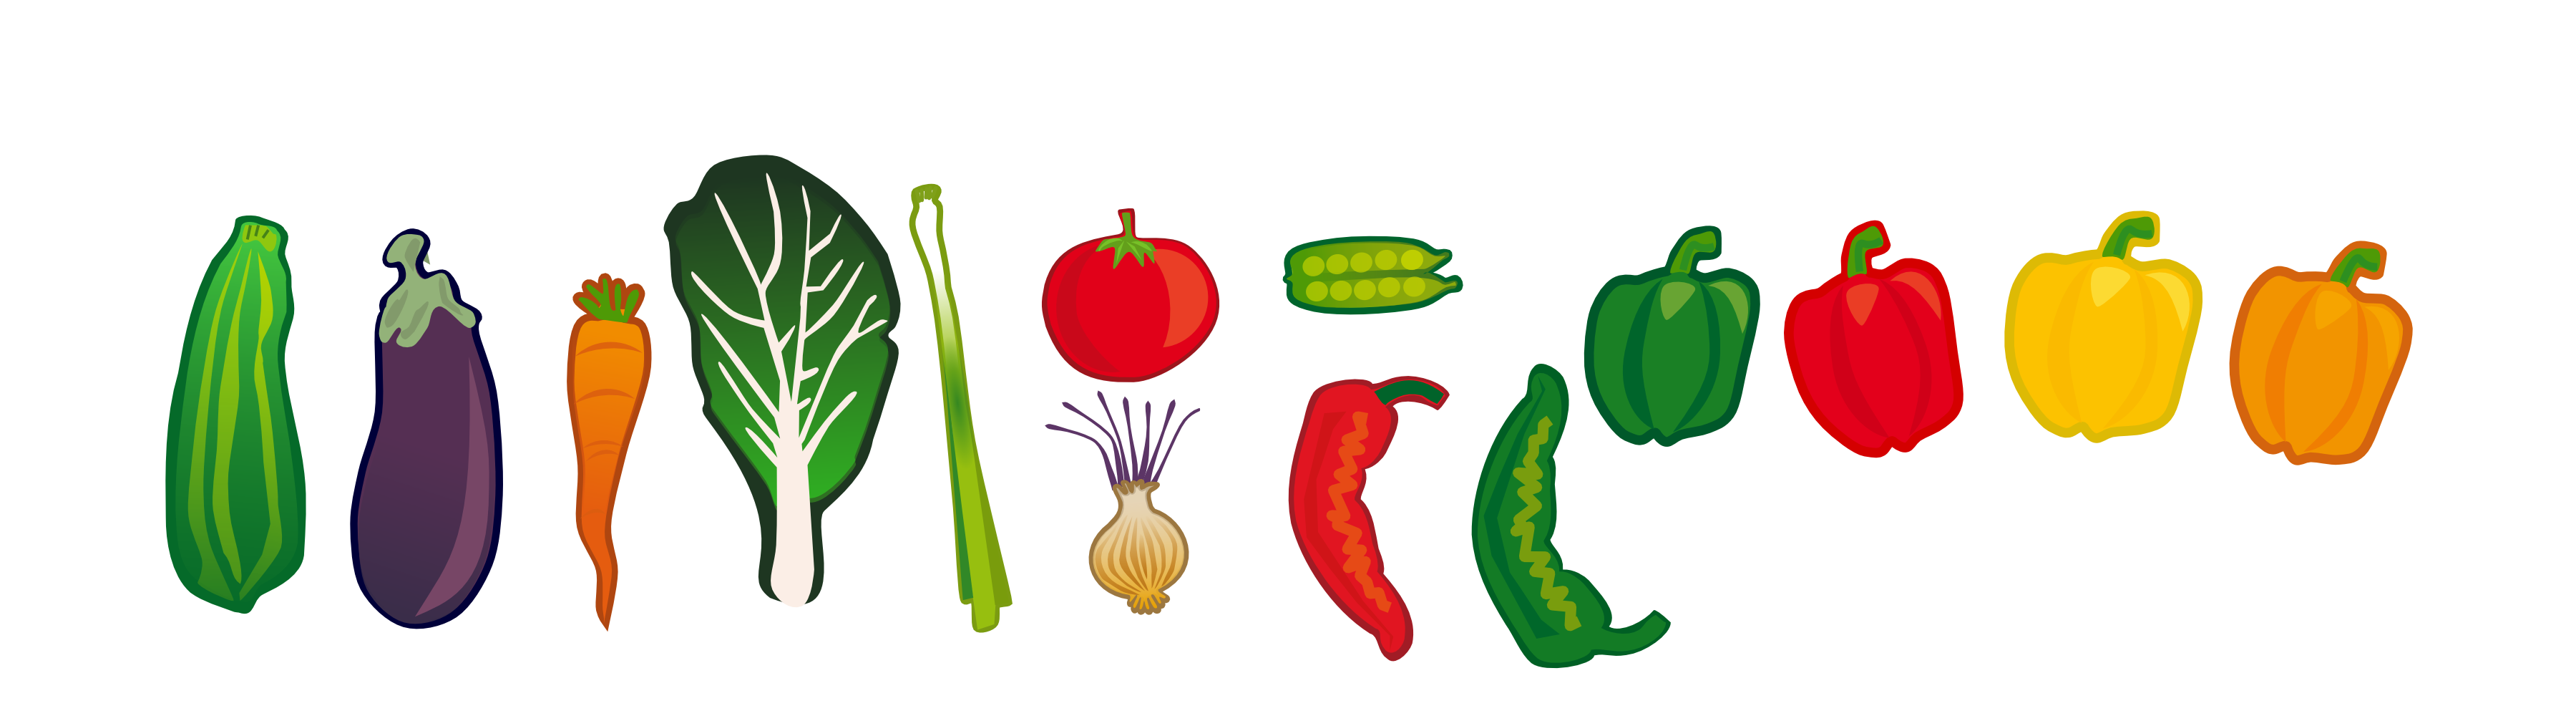 Onlinelabels Clip Art   Vegetables Set